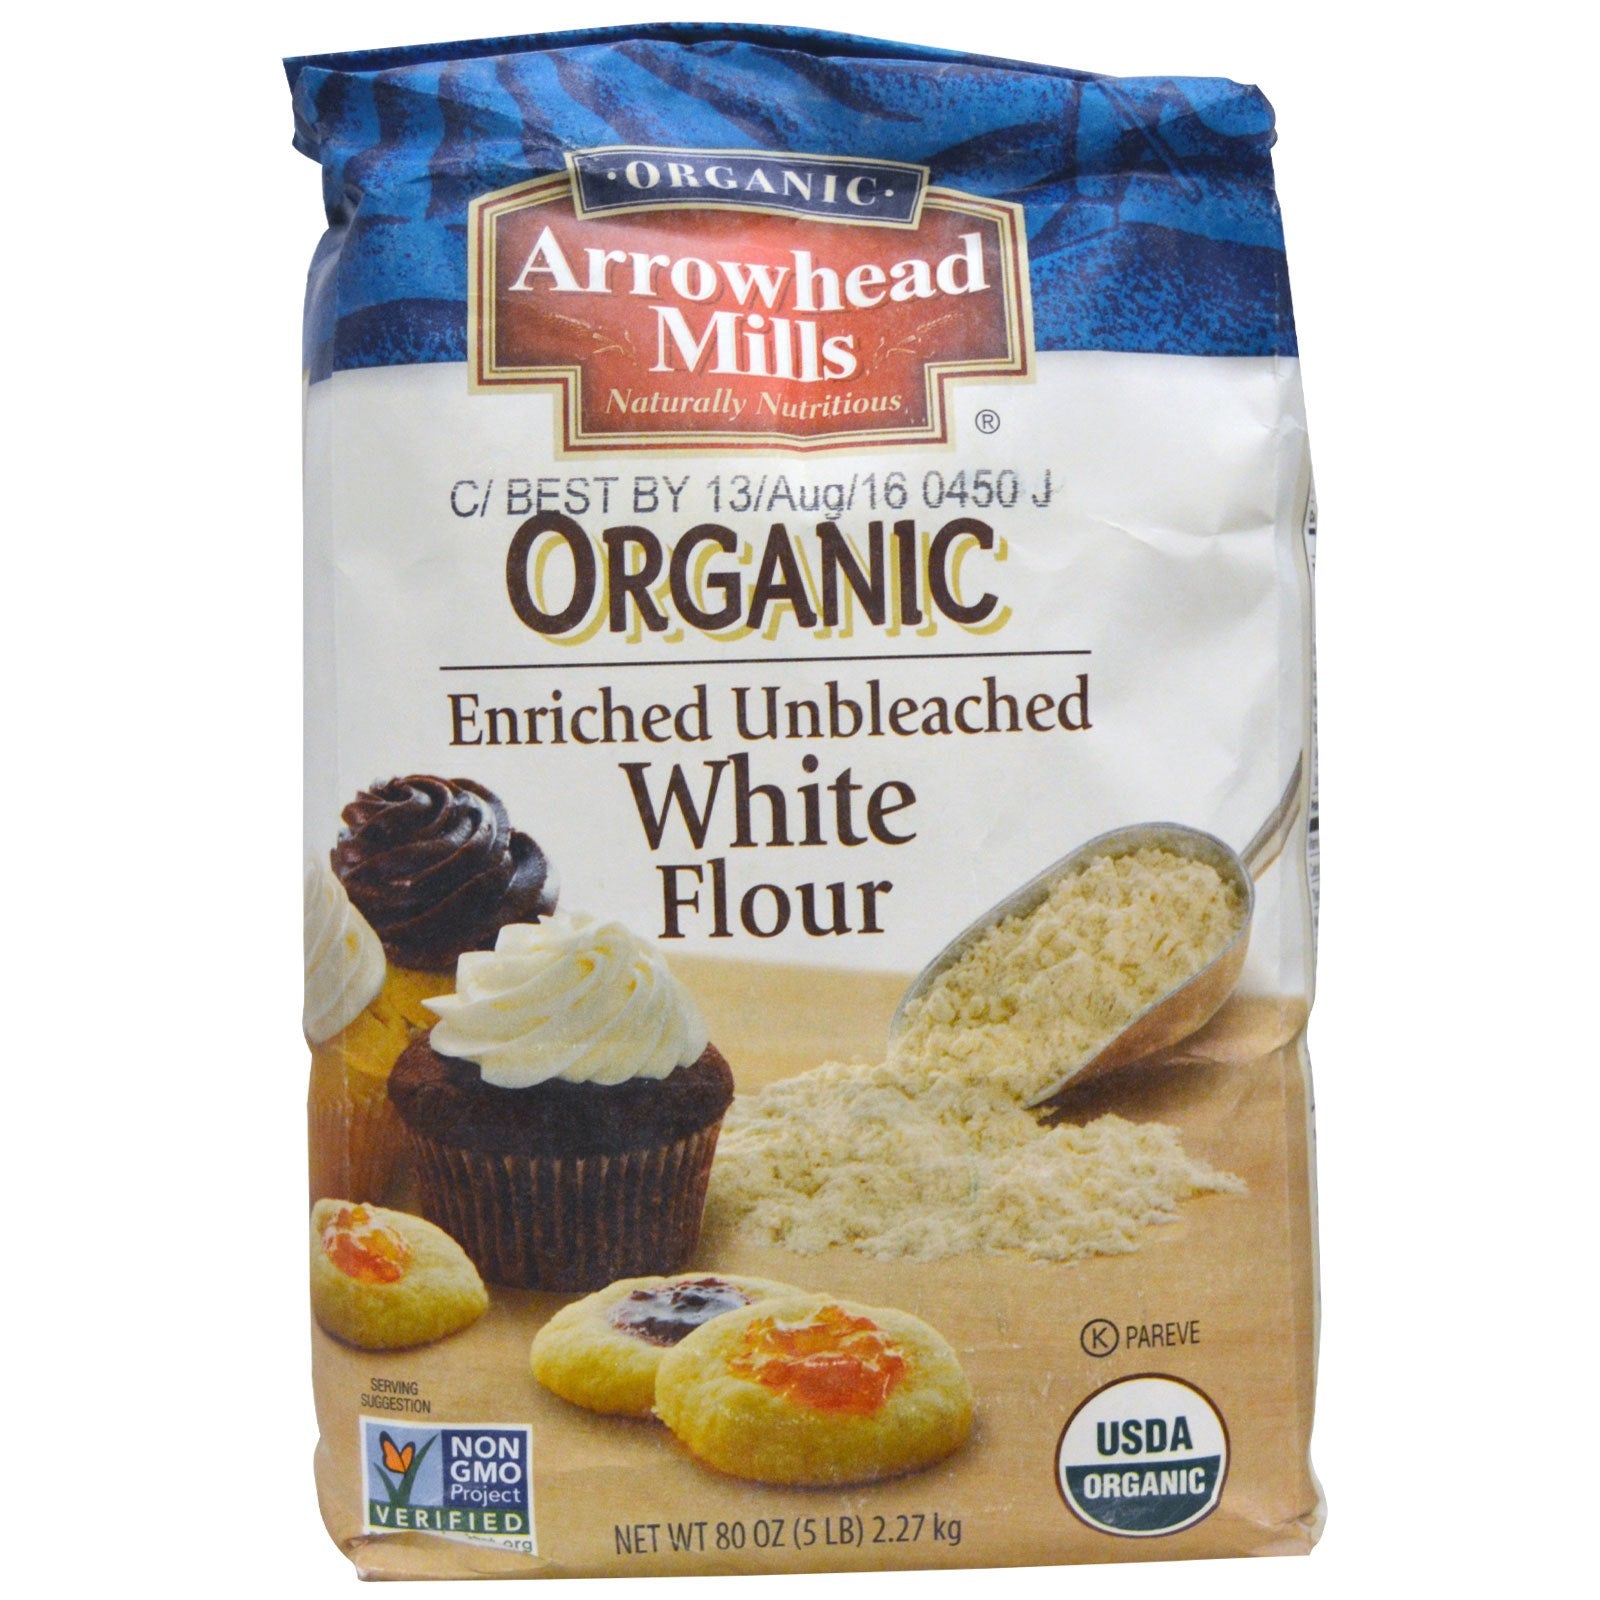 ARROWHEAD MILLS: Organic Unbleached White Flour, 25 lb - Vending Business Solutions